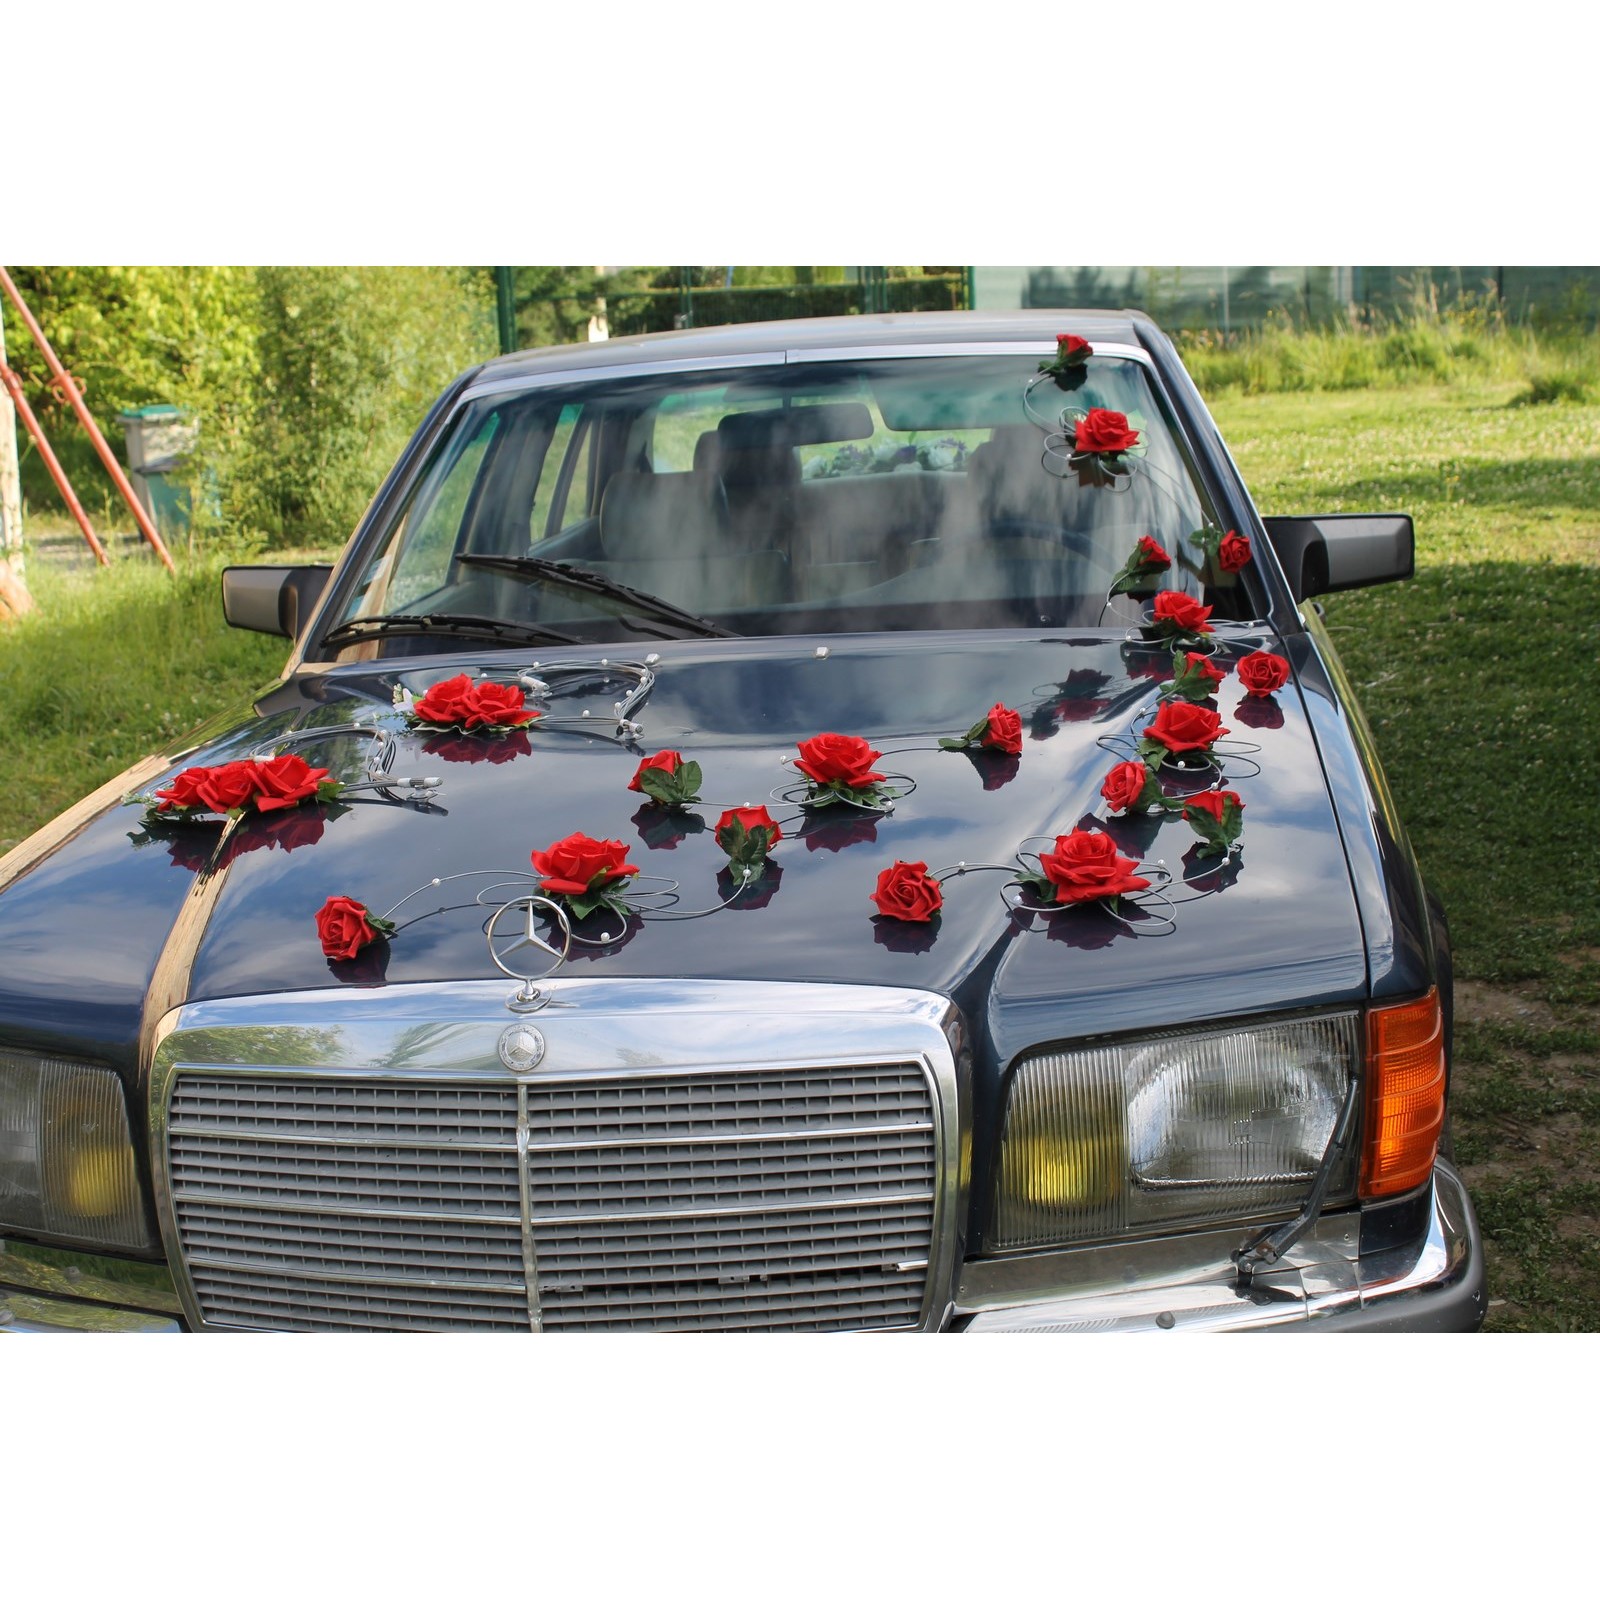 Décoration voiture mariage – 55 idées de déco romantique